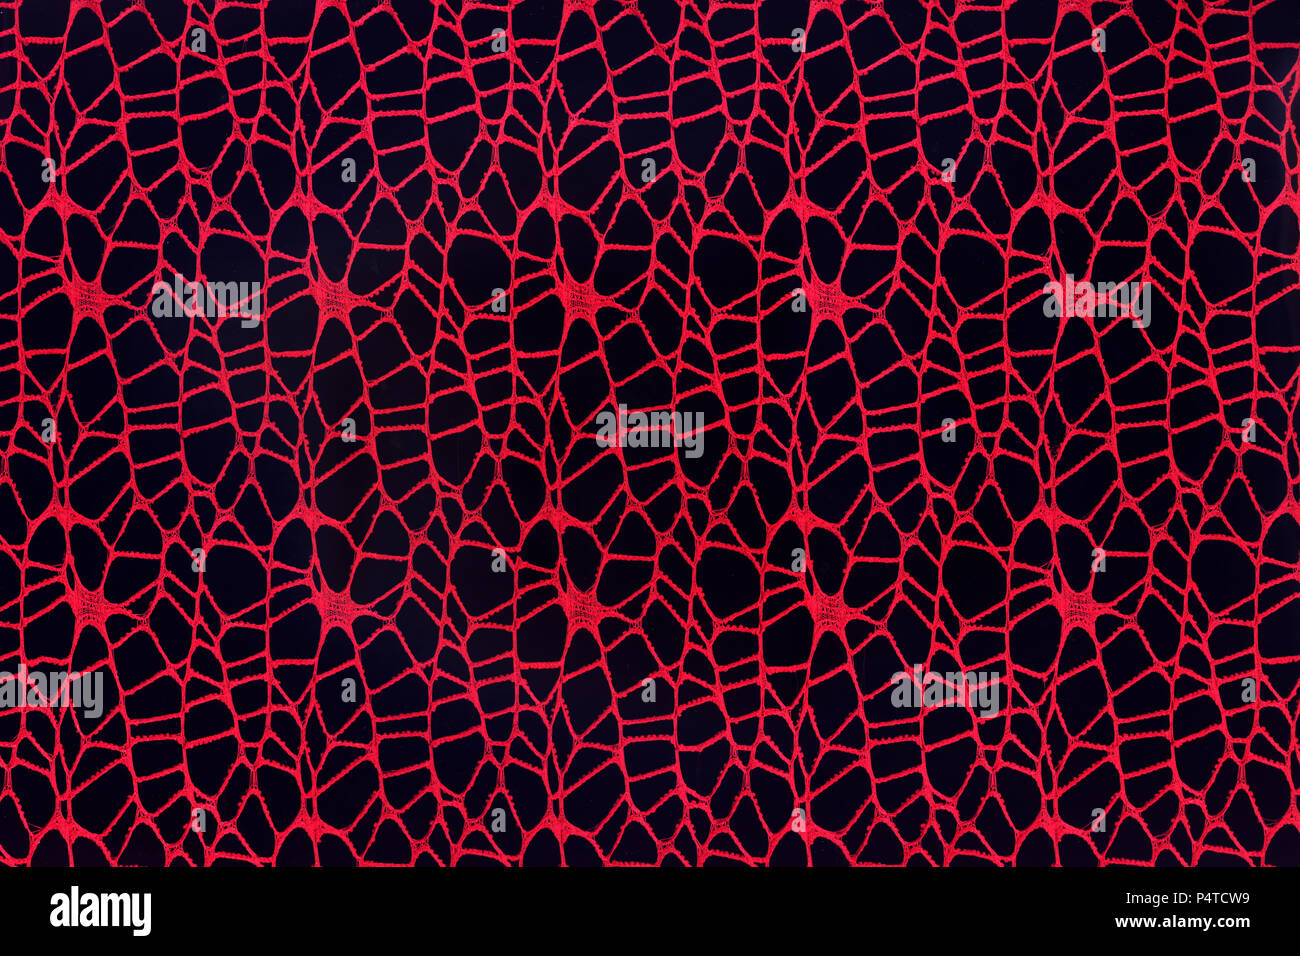 Zusammenfassung Hintergrund aus Gewebe aus roten Fäden auf einem schwarzen Hintergrund. Stockfoto